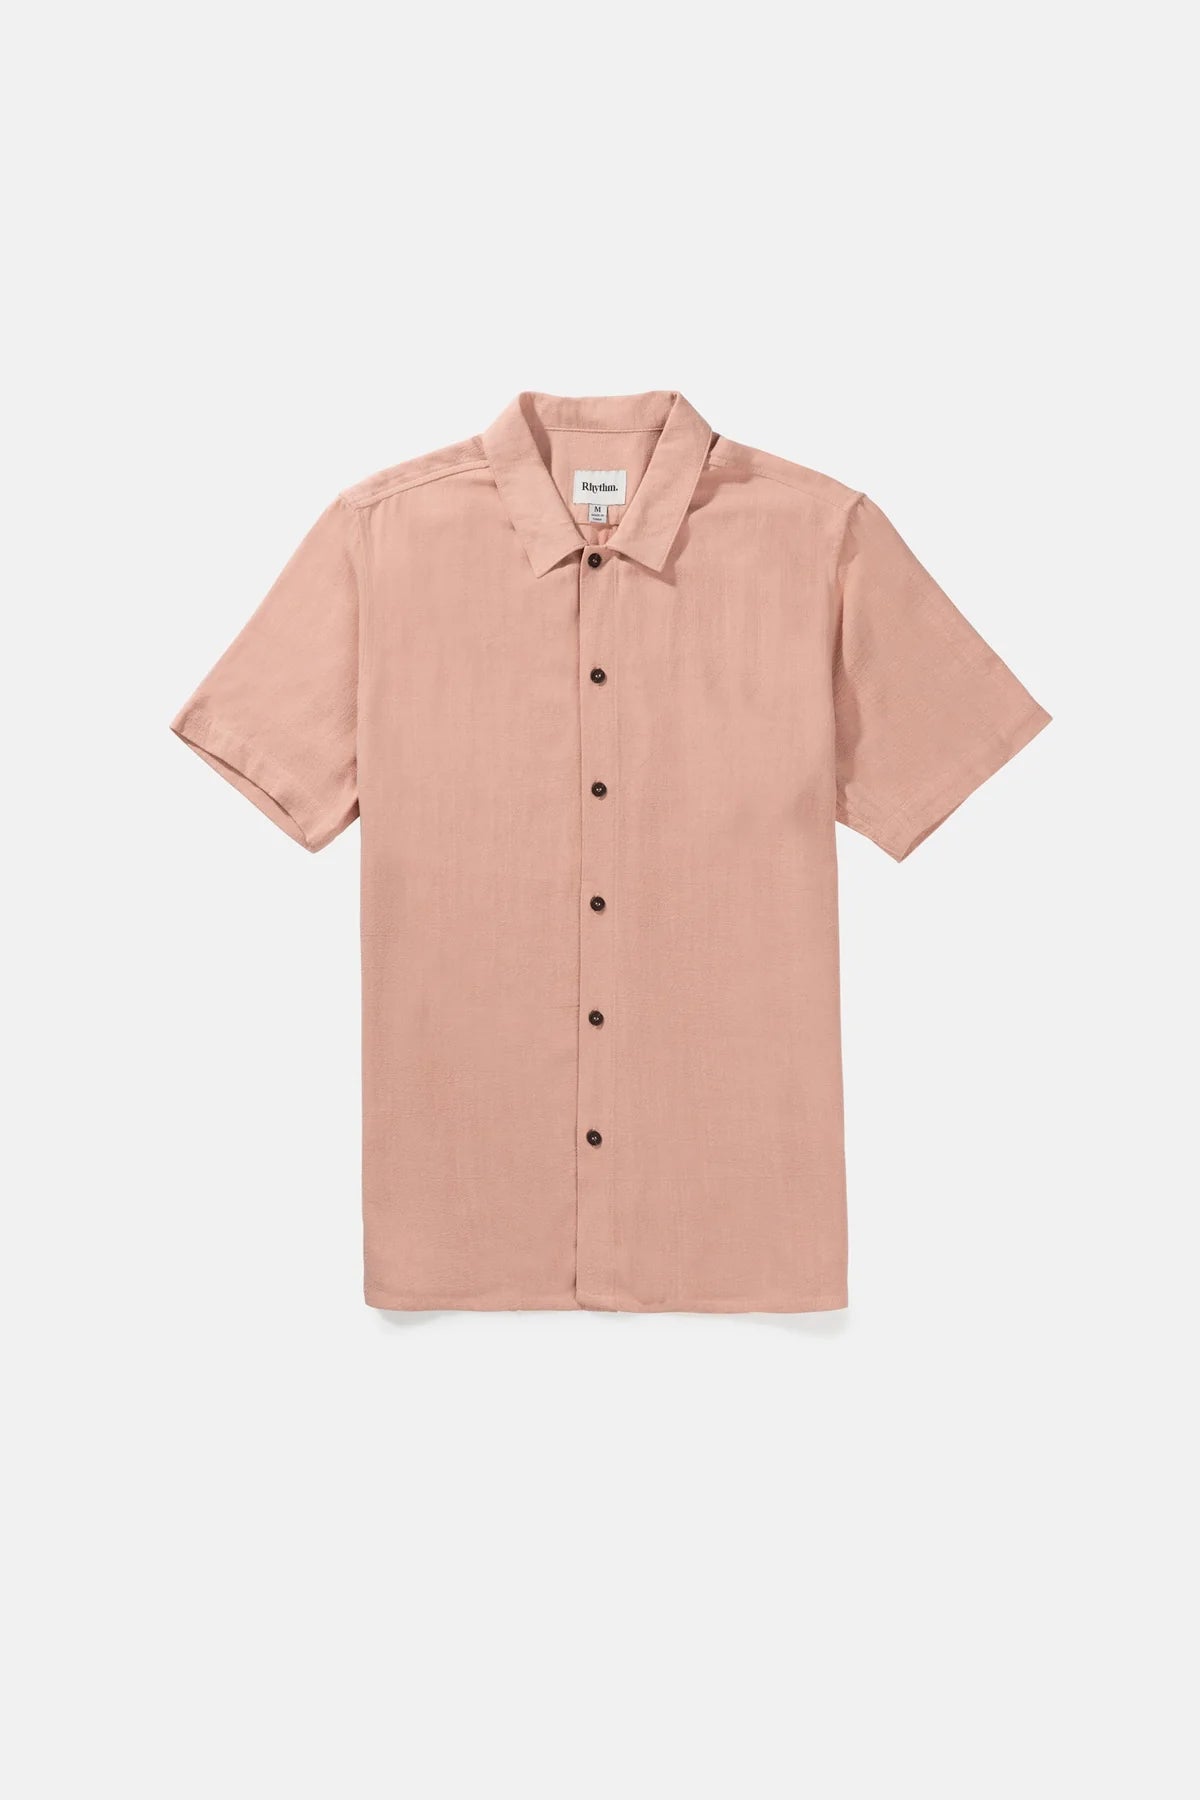 RHYTHM Textured Linen Short Sleeve Button Guava Men's Short Sleeve Button Up Shirts Rhythm 